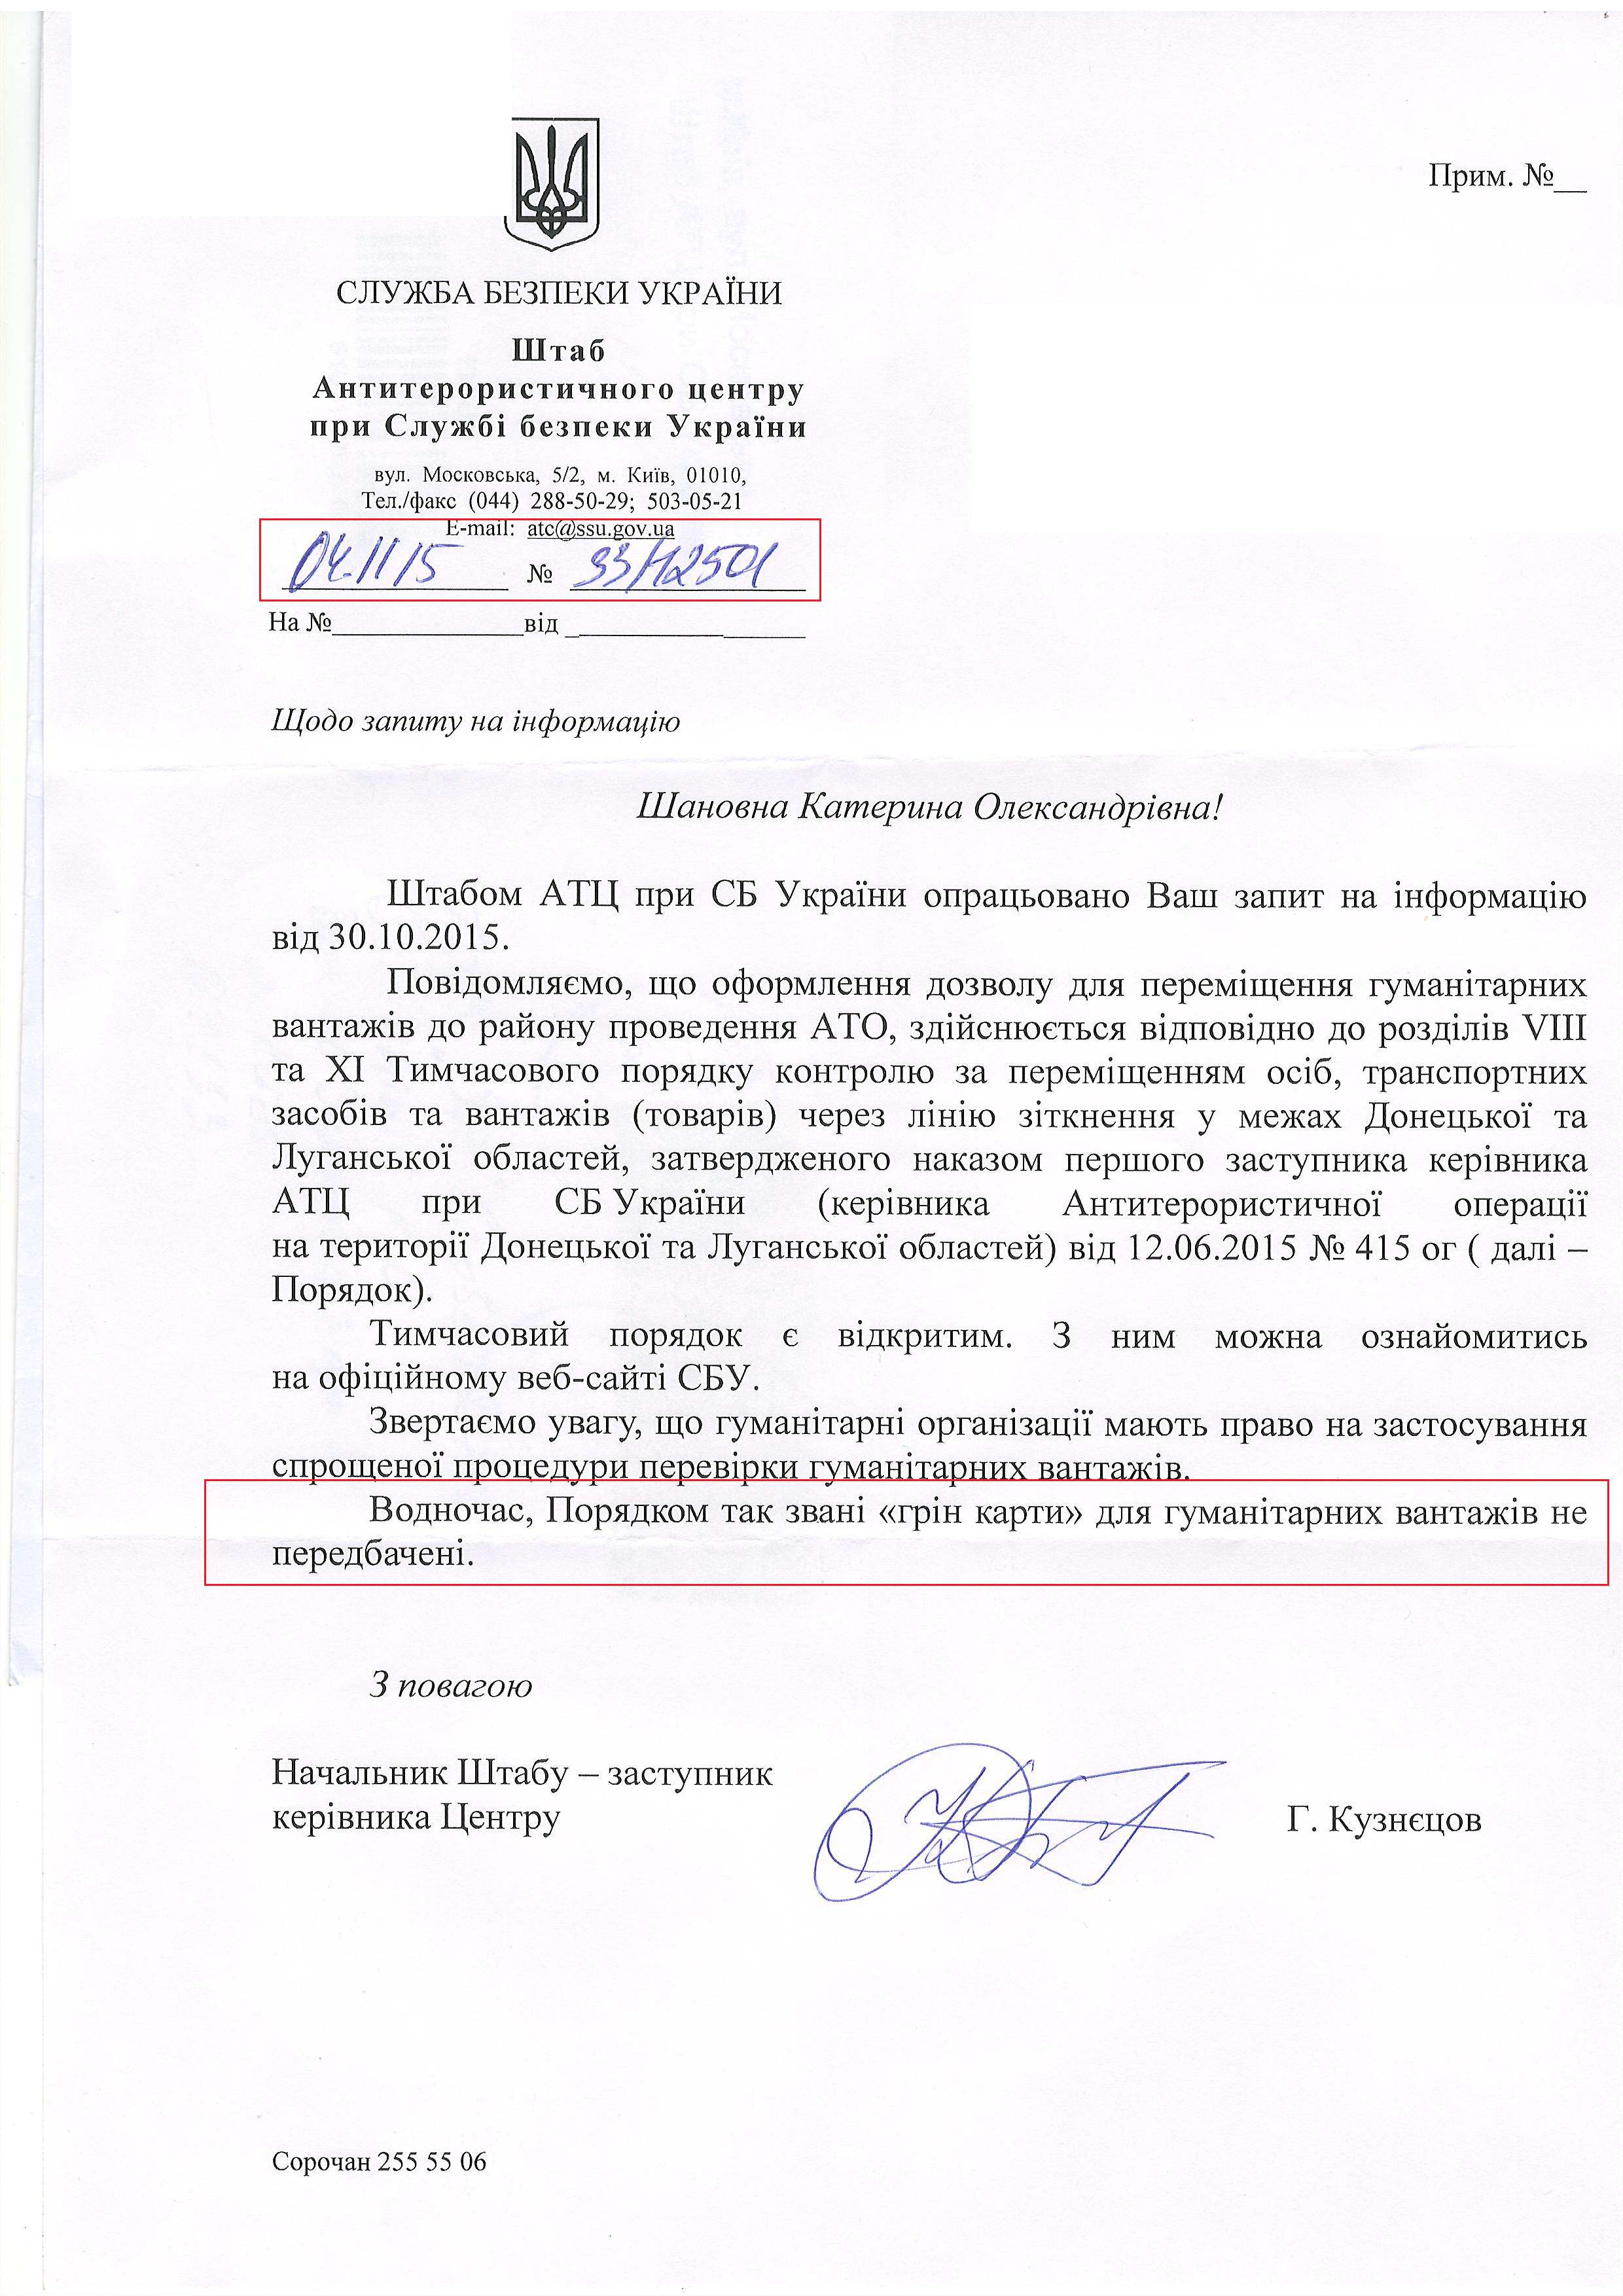 Лист Служби безпеки України від 4 листопада 2015 року